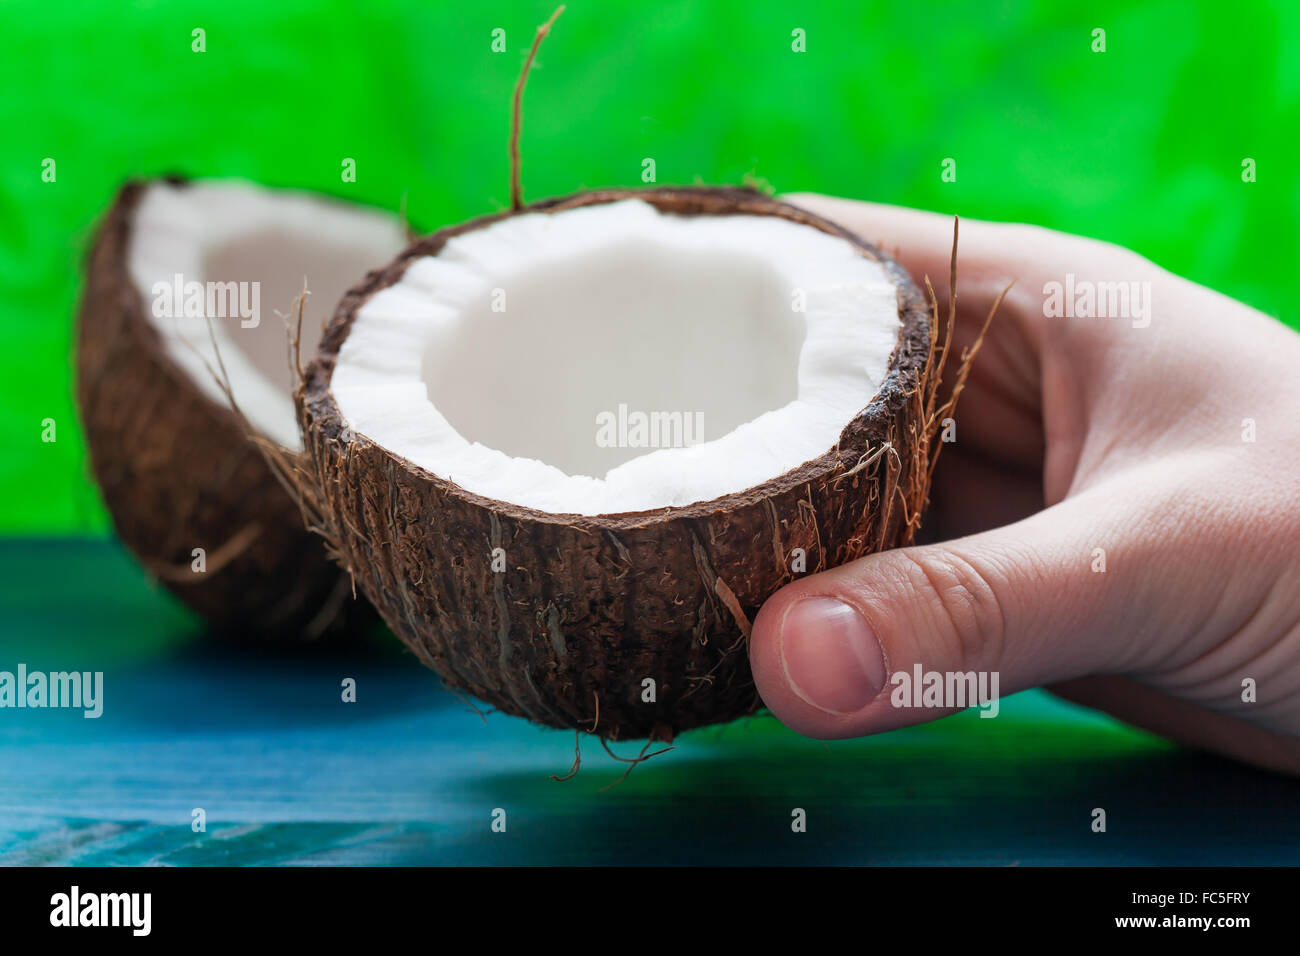 Kokosnuss-Hälften auf einem blau-grünen Hintergrund Stockfoto